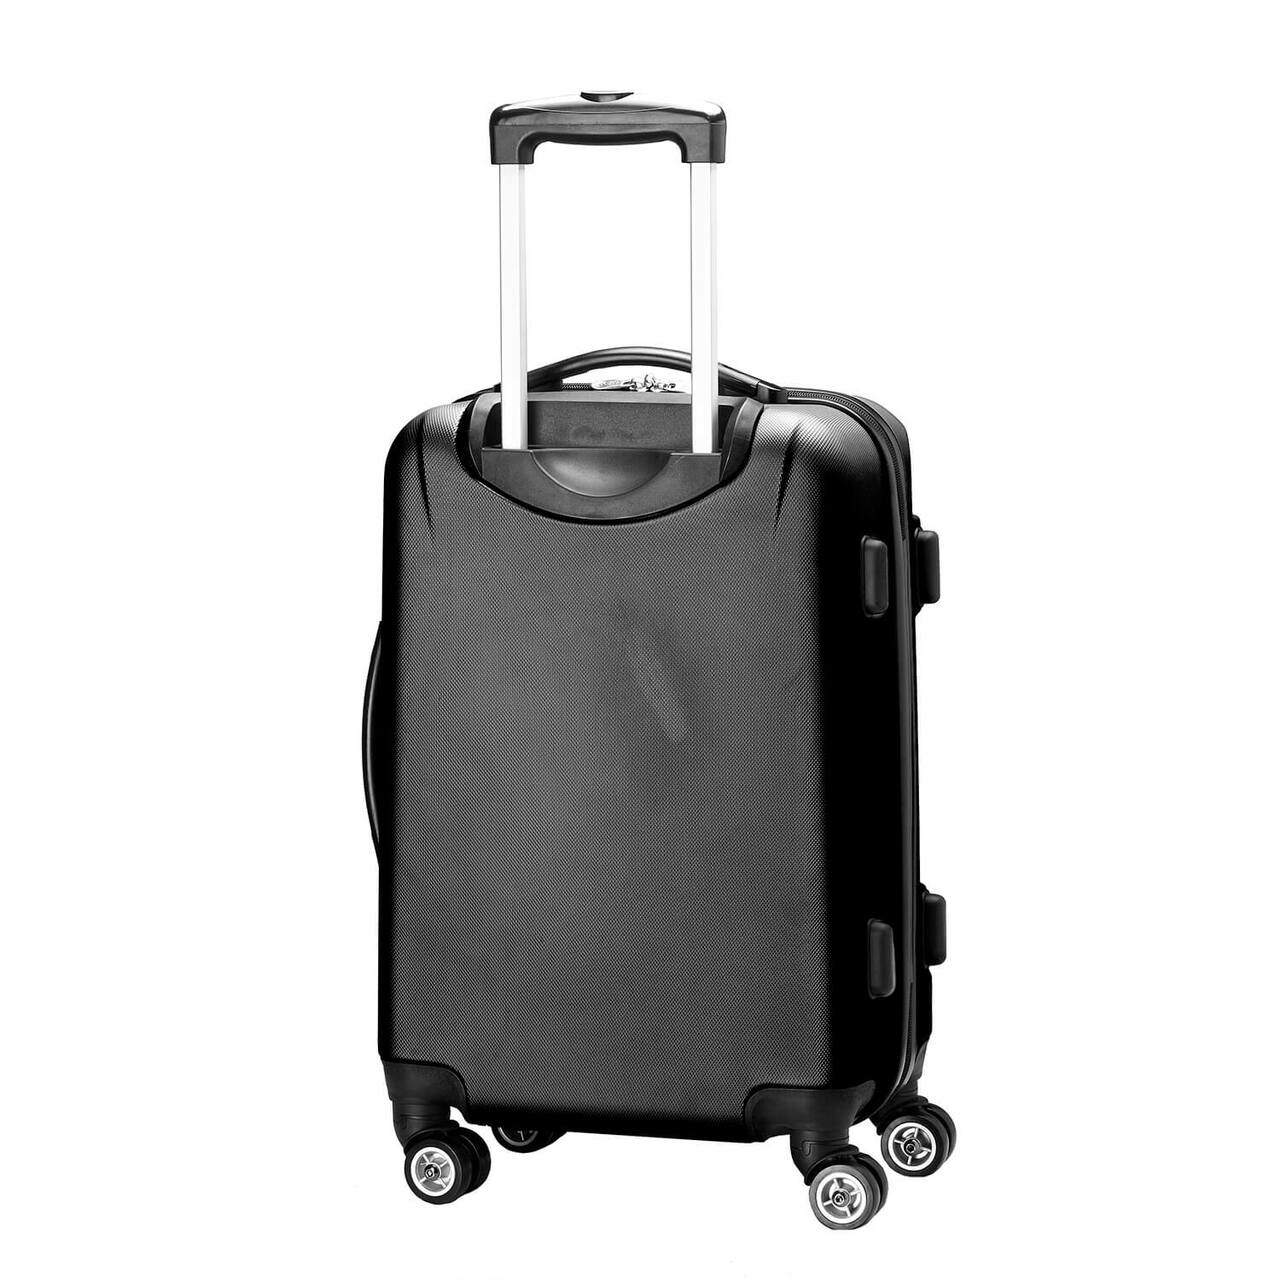 Ohio State Buckeyes 20" Hardcase Luggage Carry-on Spinner